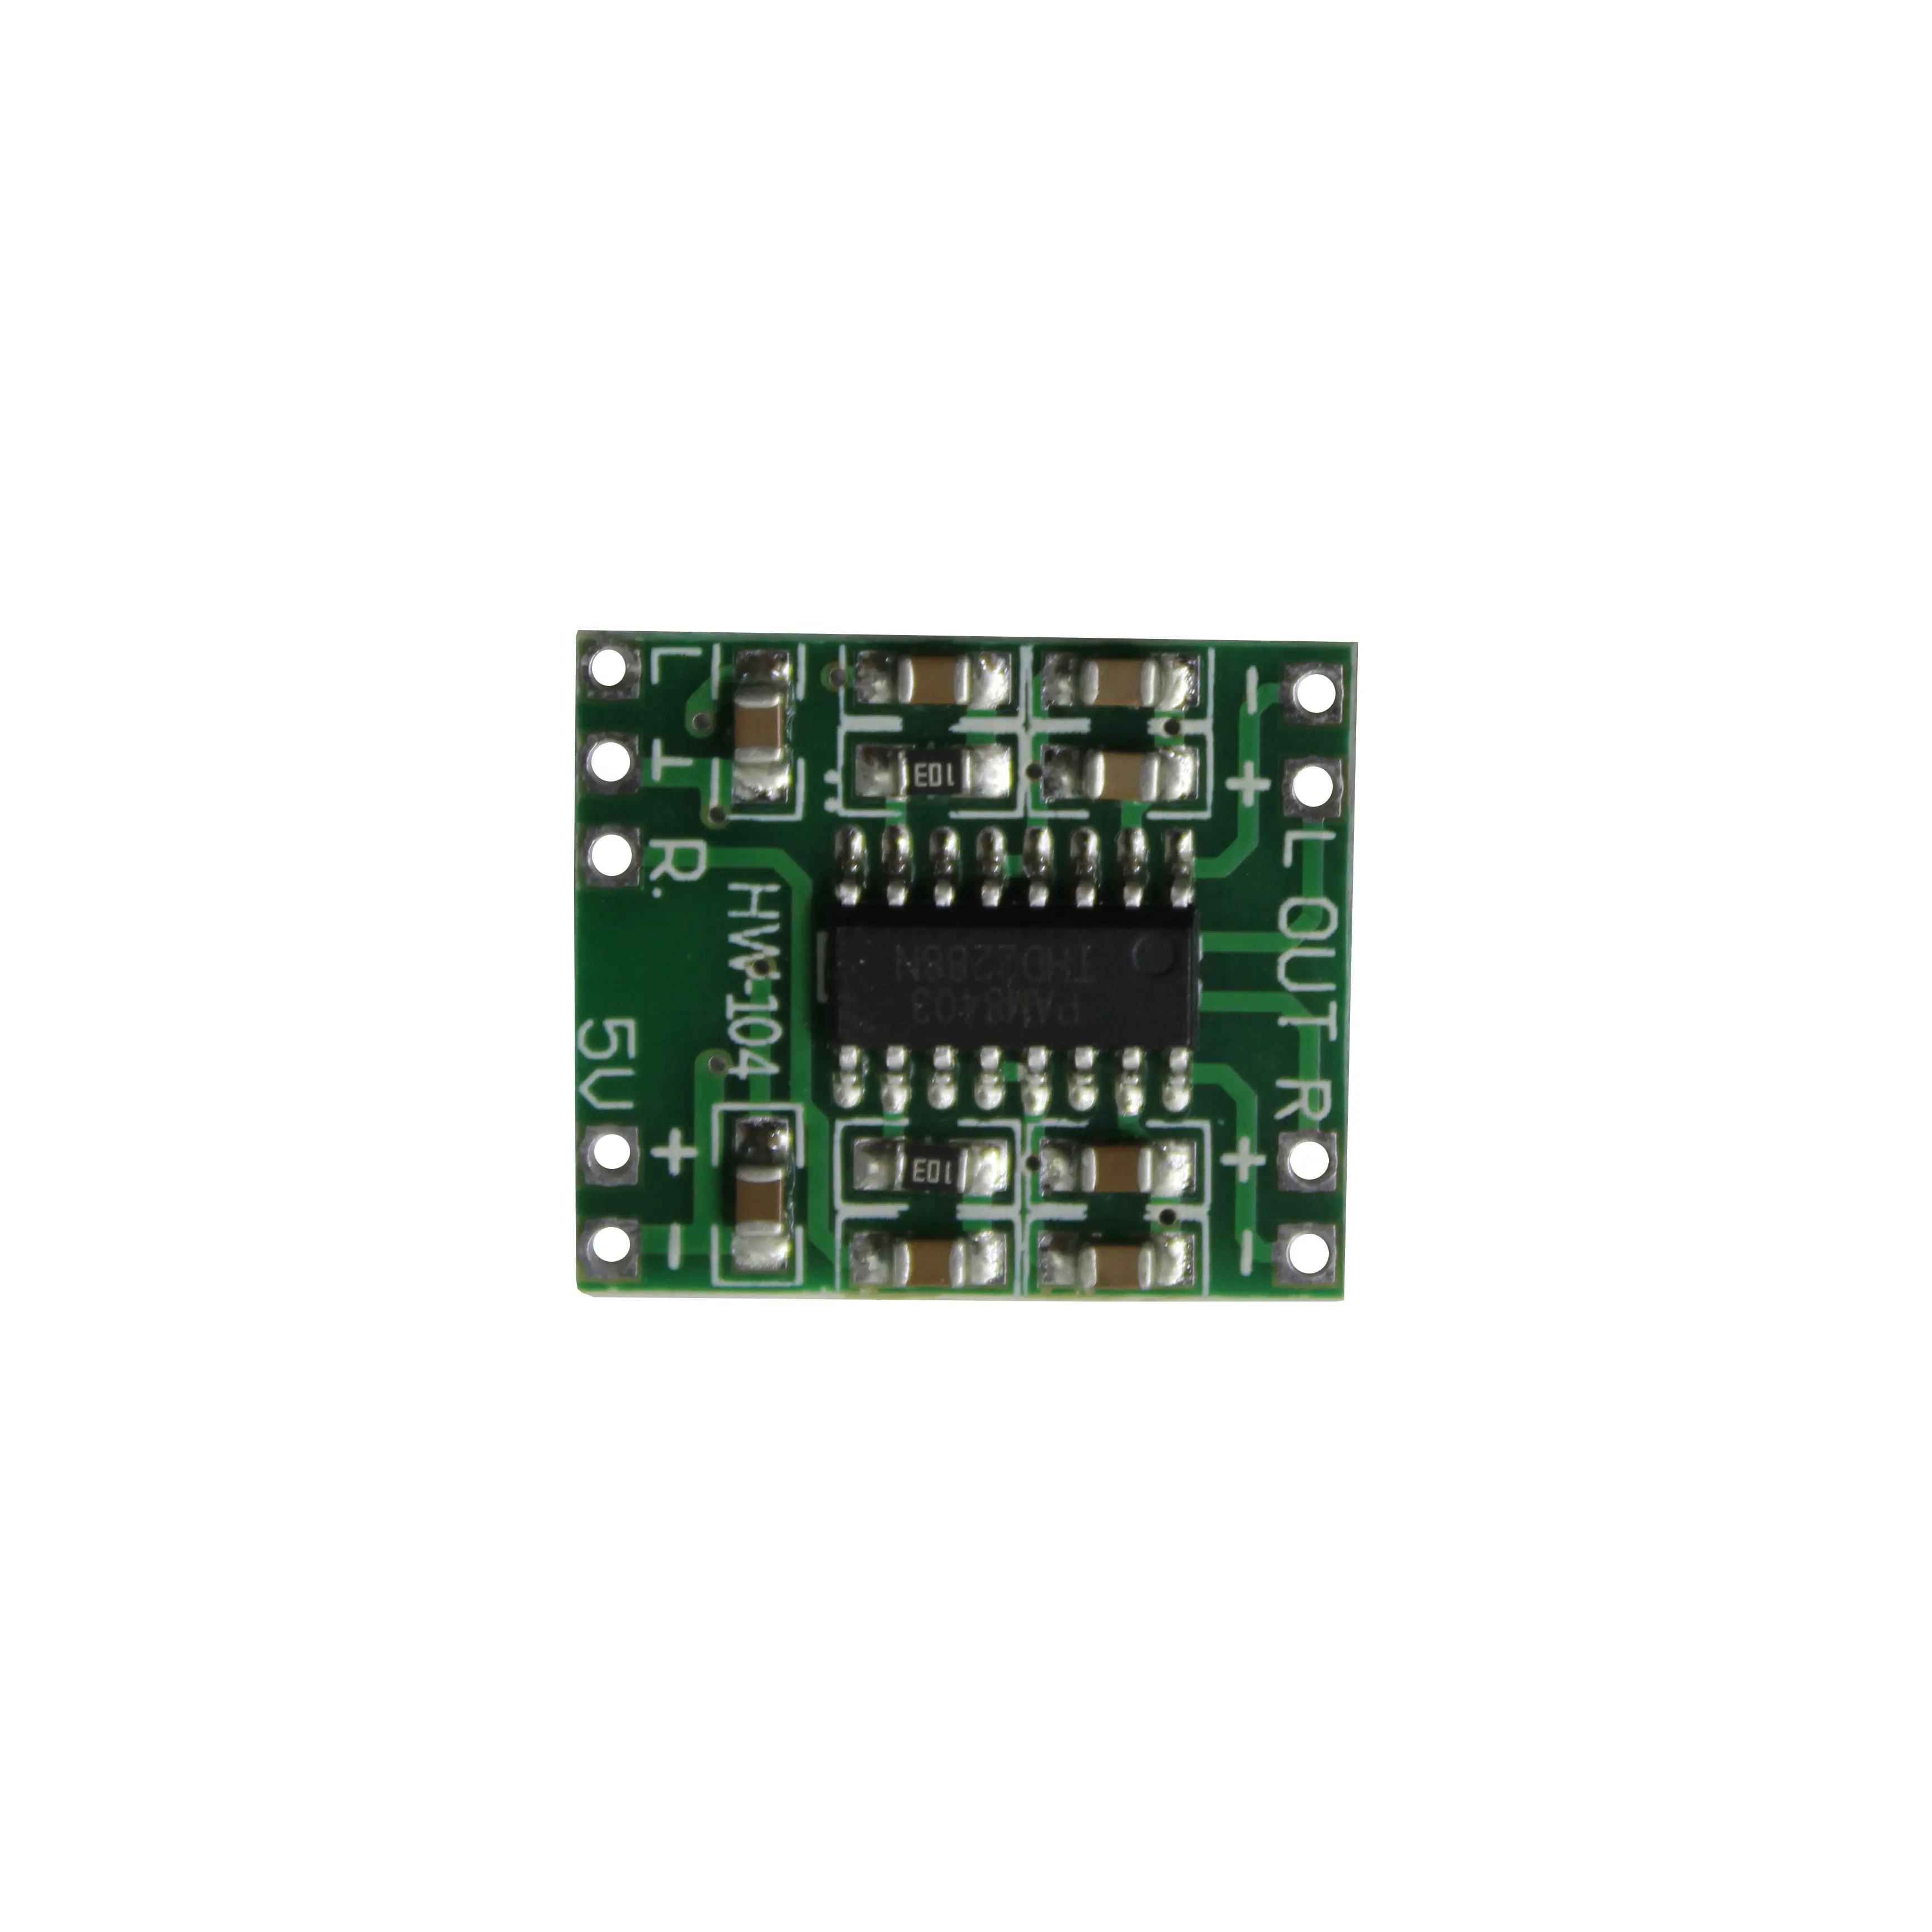 Quadro amplificador pam8403, placa de amplificador digital de classe d 2x3w super miniatura 2.5 ~ 5v com fonte de alimentação usb